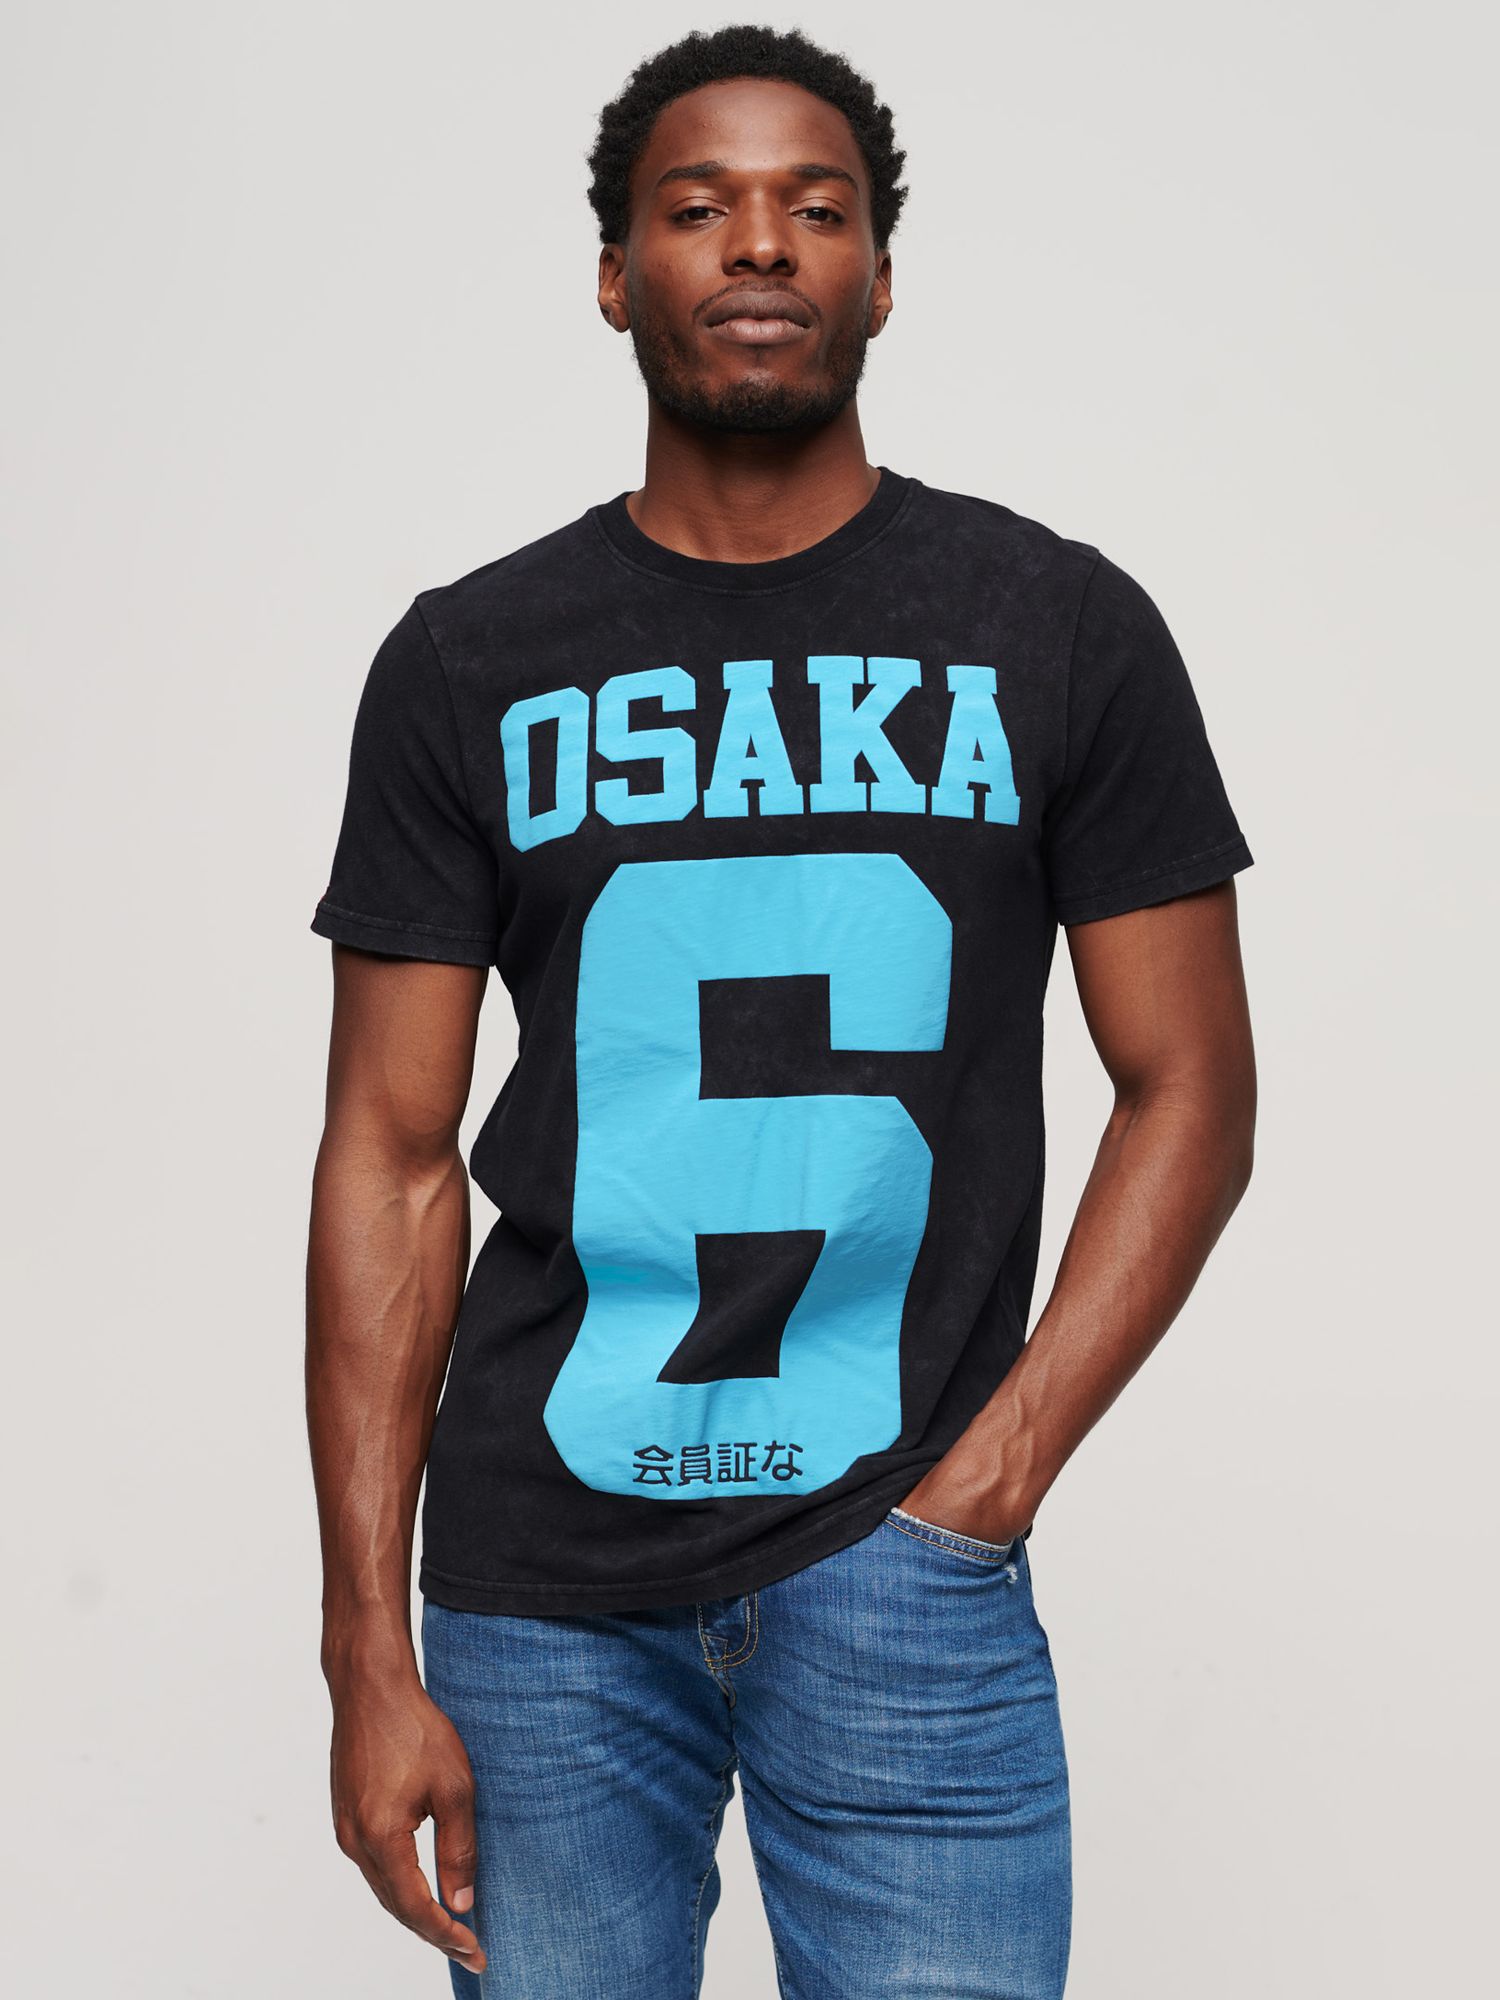 Футболка с пышным принтом Osaka 6 Superdry, черный/синий футболка с принтом osaka kiss superdry цвет enamel green